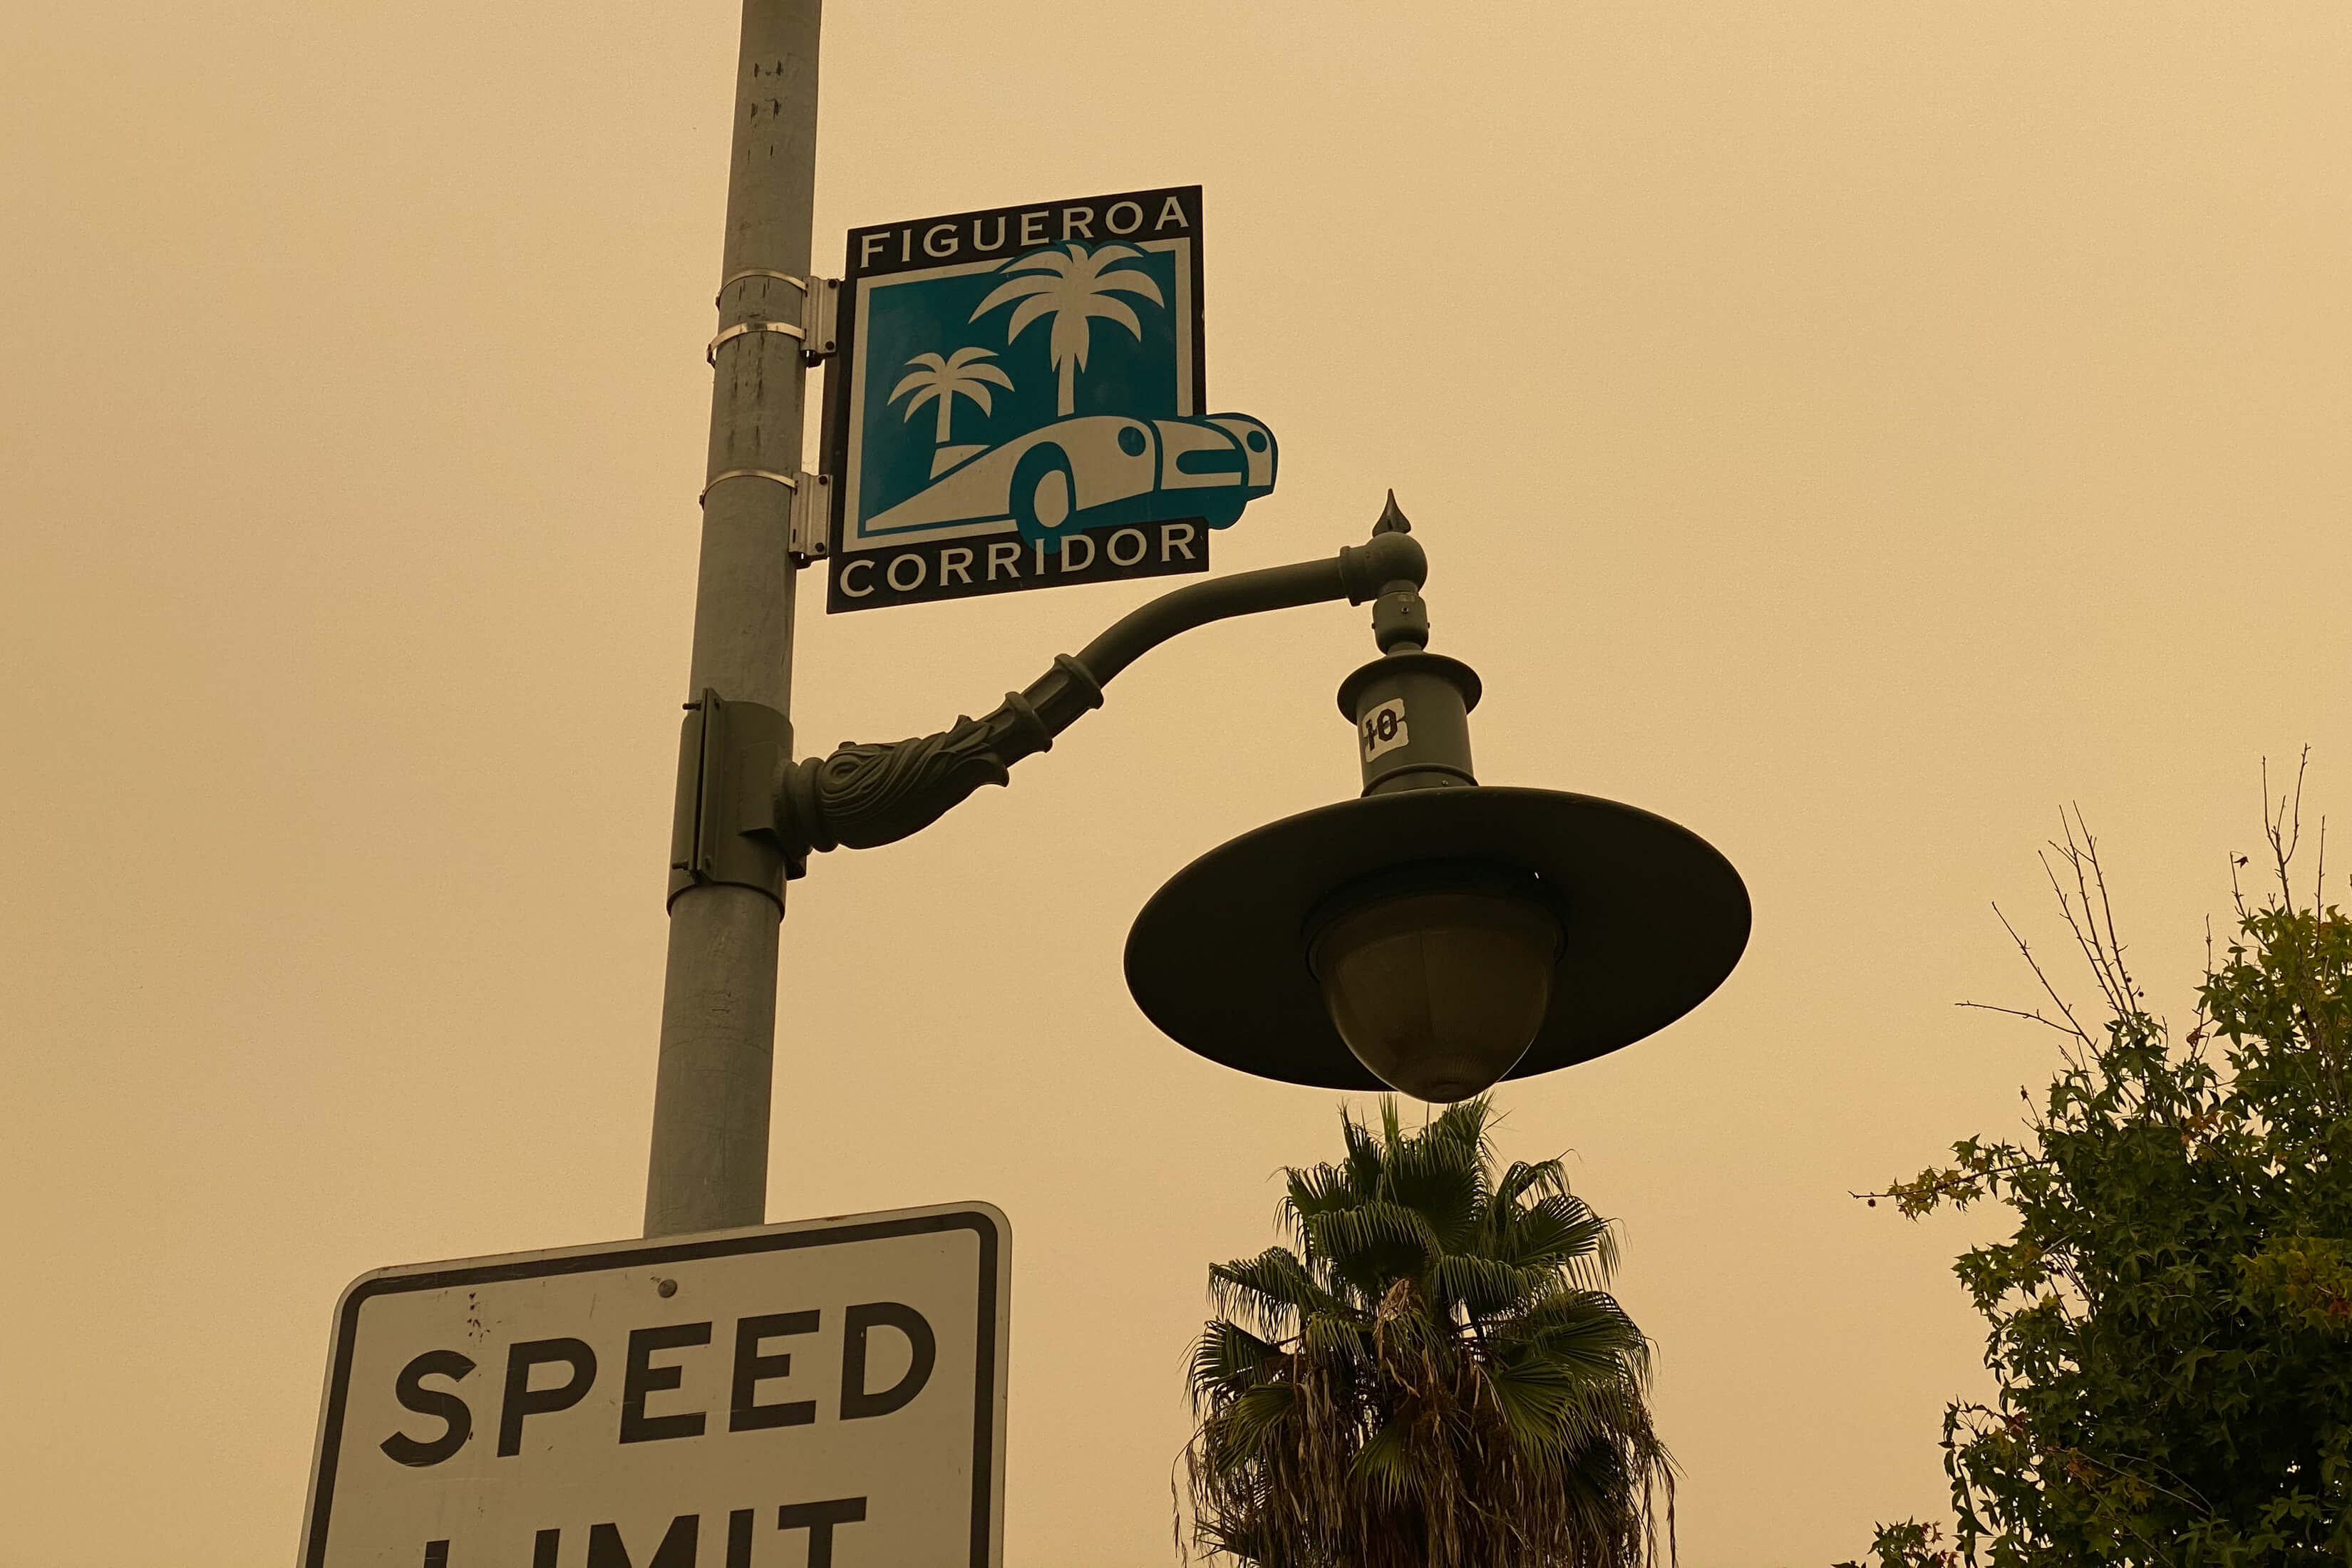 Street signs of Figueroa Corridor